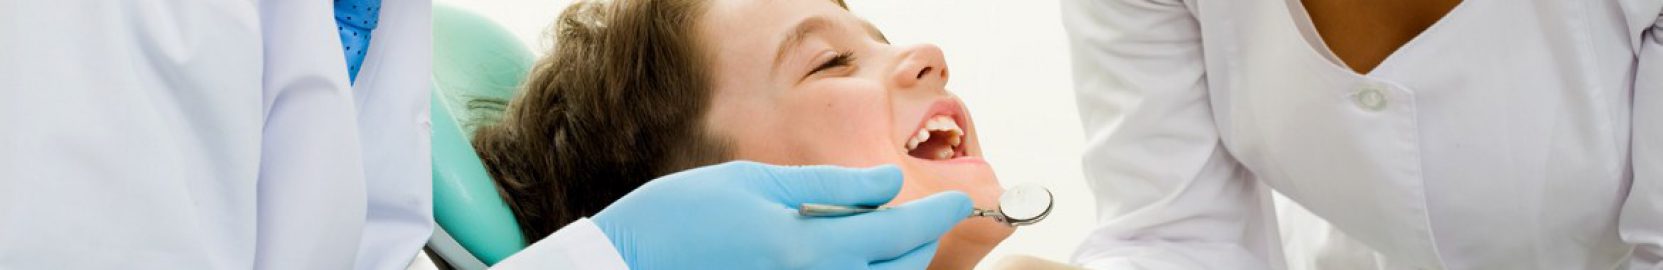 Air-cleaner-dental-practice